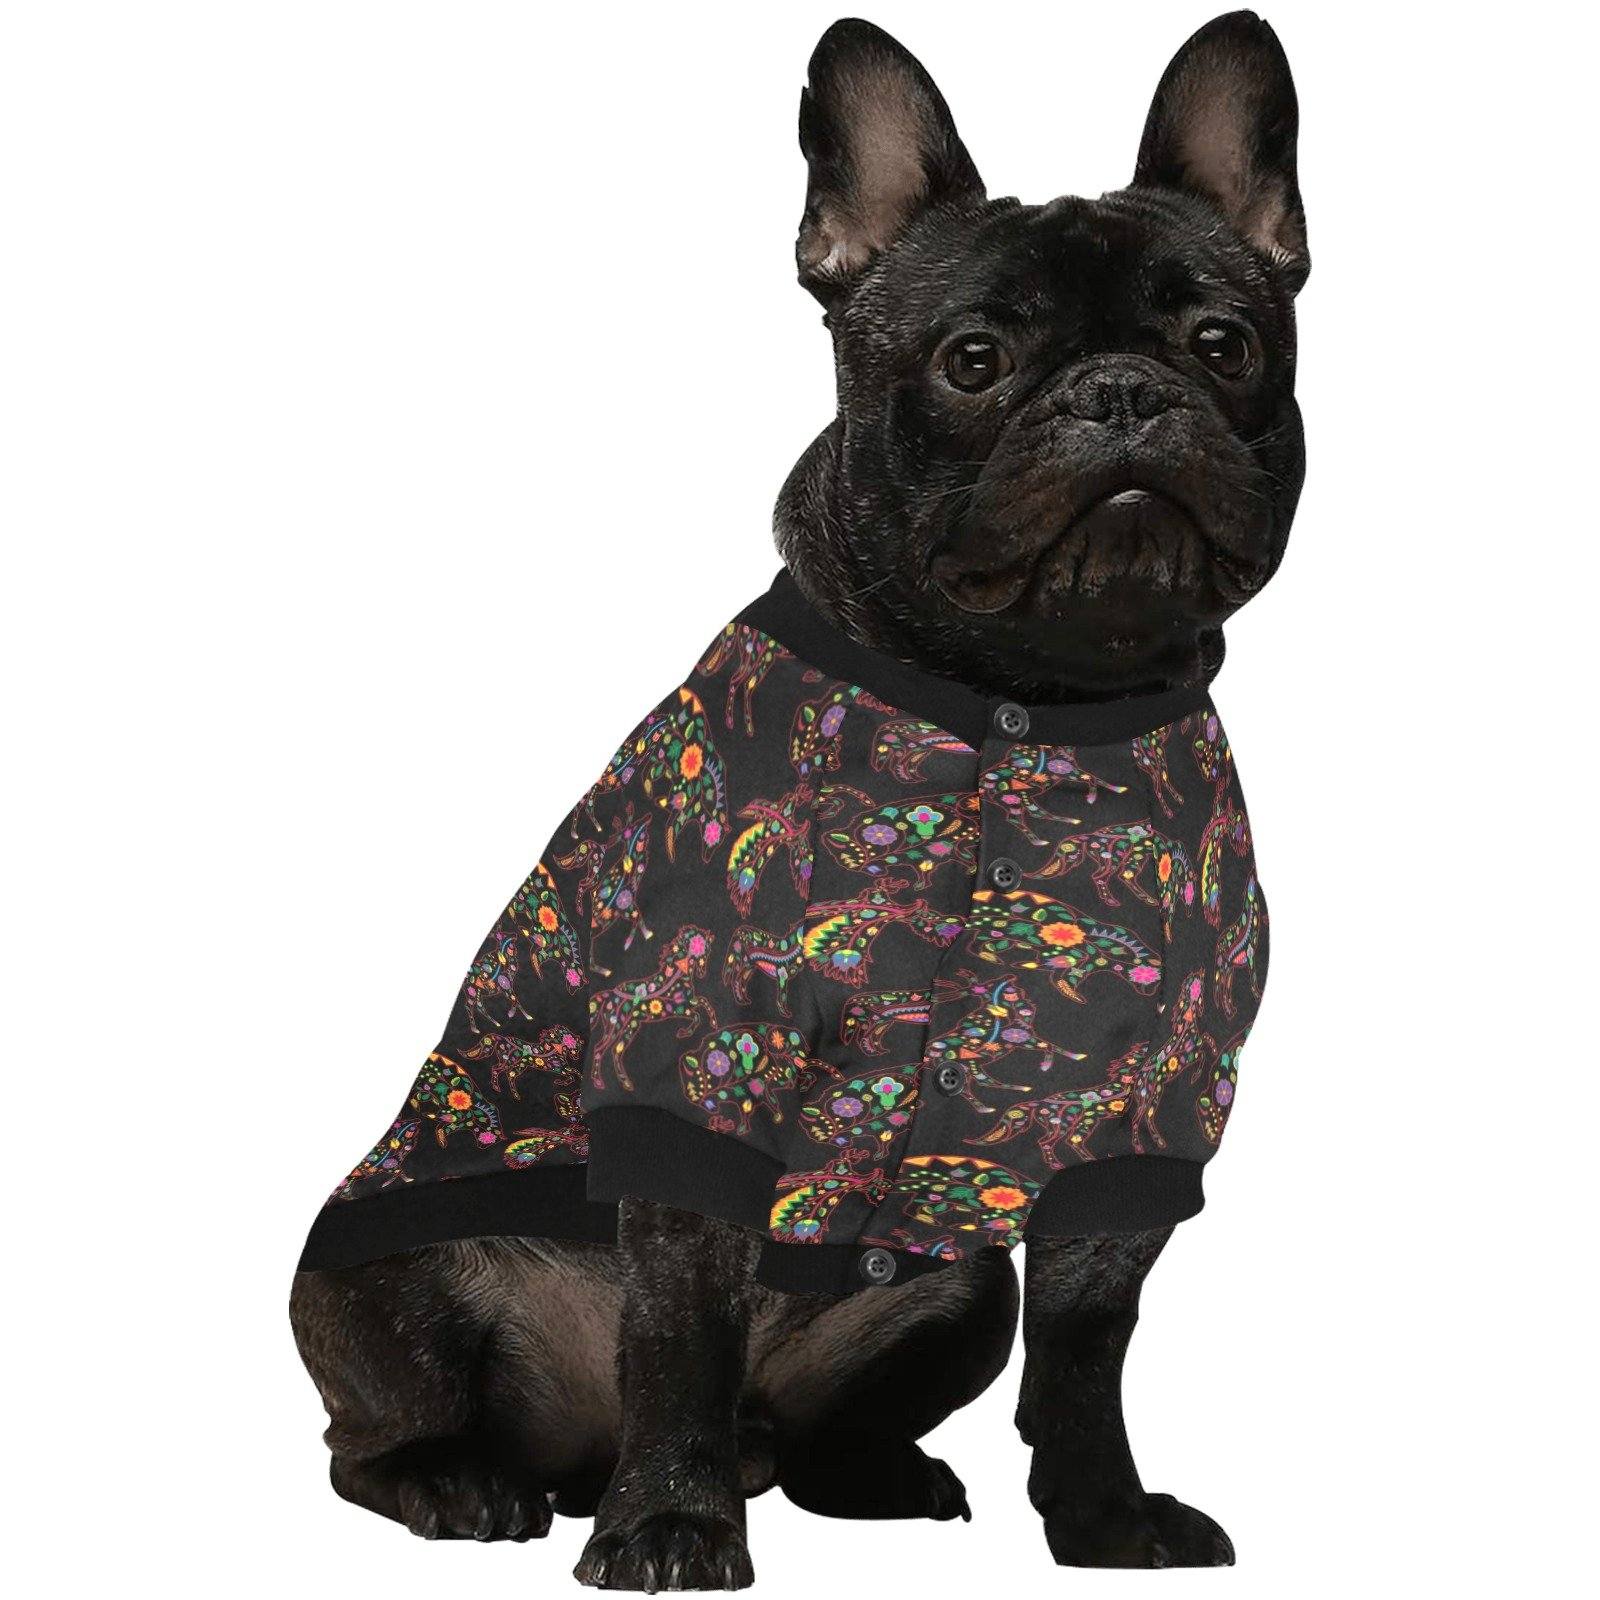 Neon Floral Animals Pet Dog Round Neck Shirt Pet Dog Round Neck Shirt e-joyer 